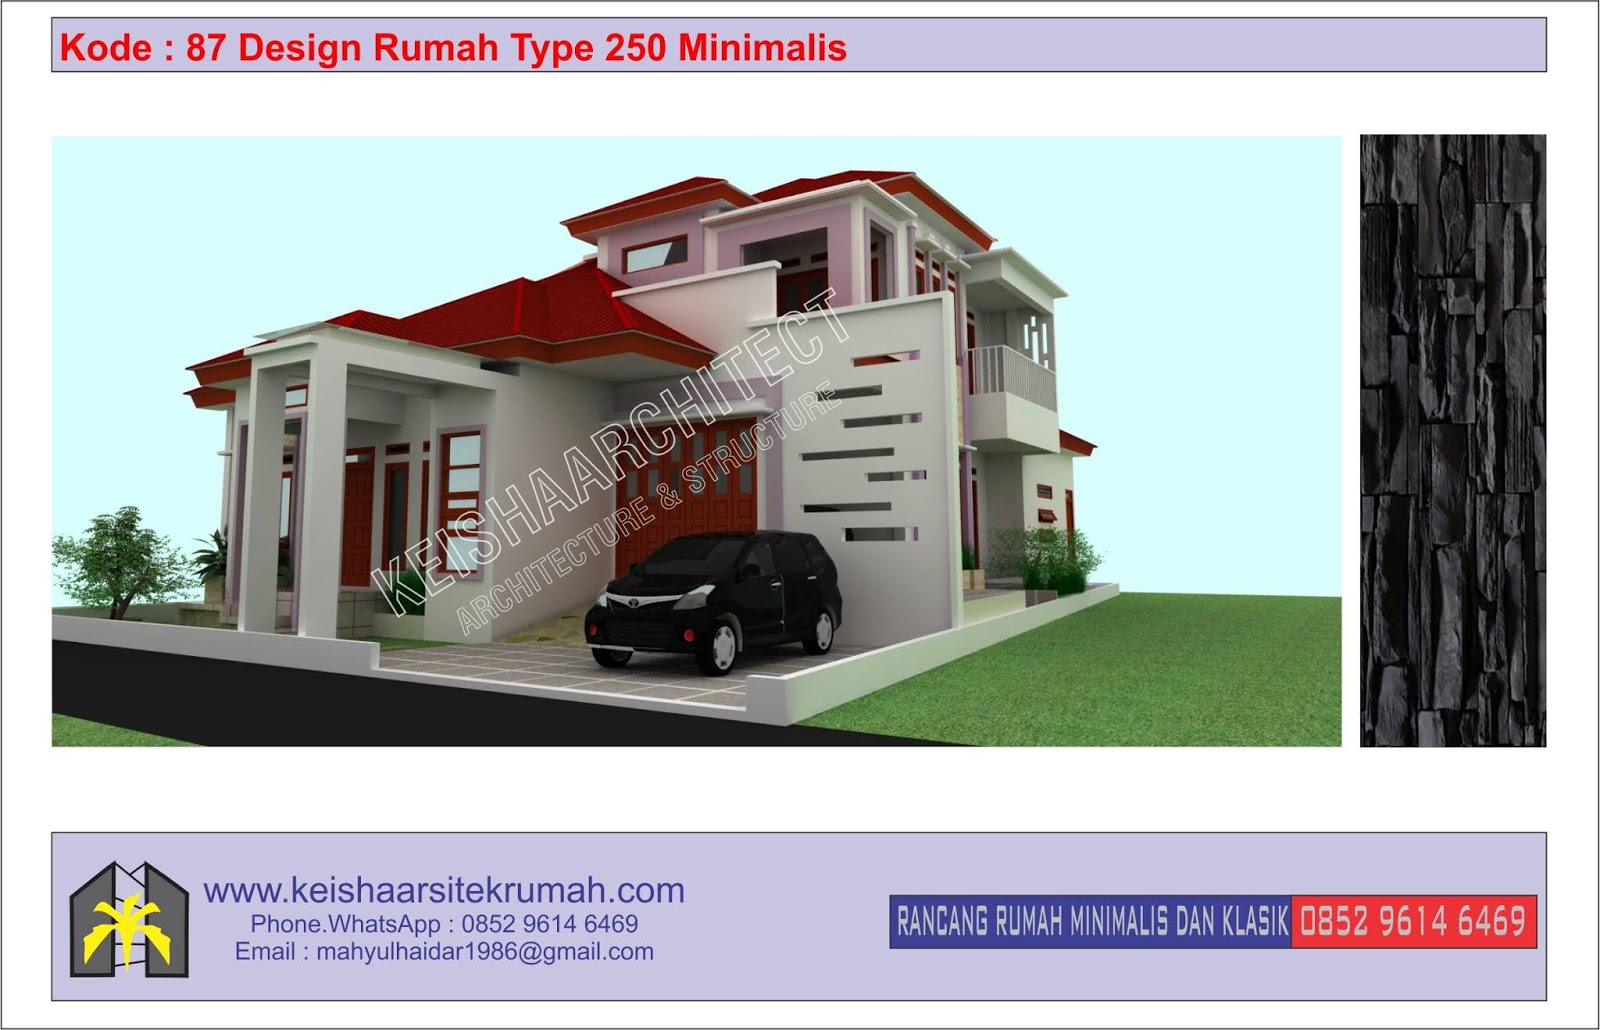 Kode 87 Design Rumah Type 250 Lokasi Banda Aceh Desain Rumah